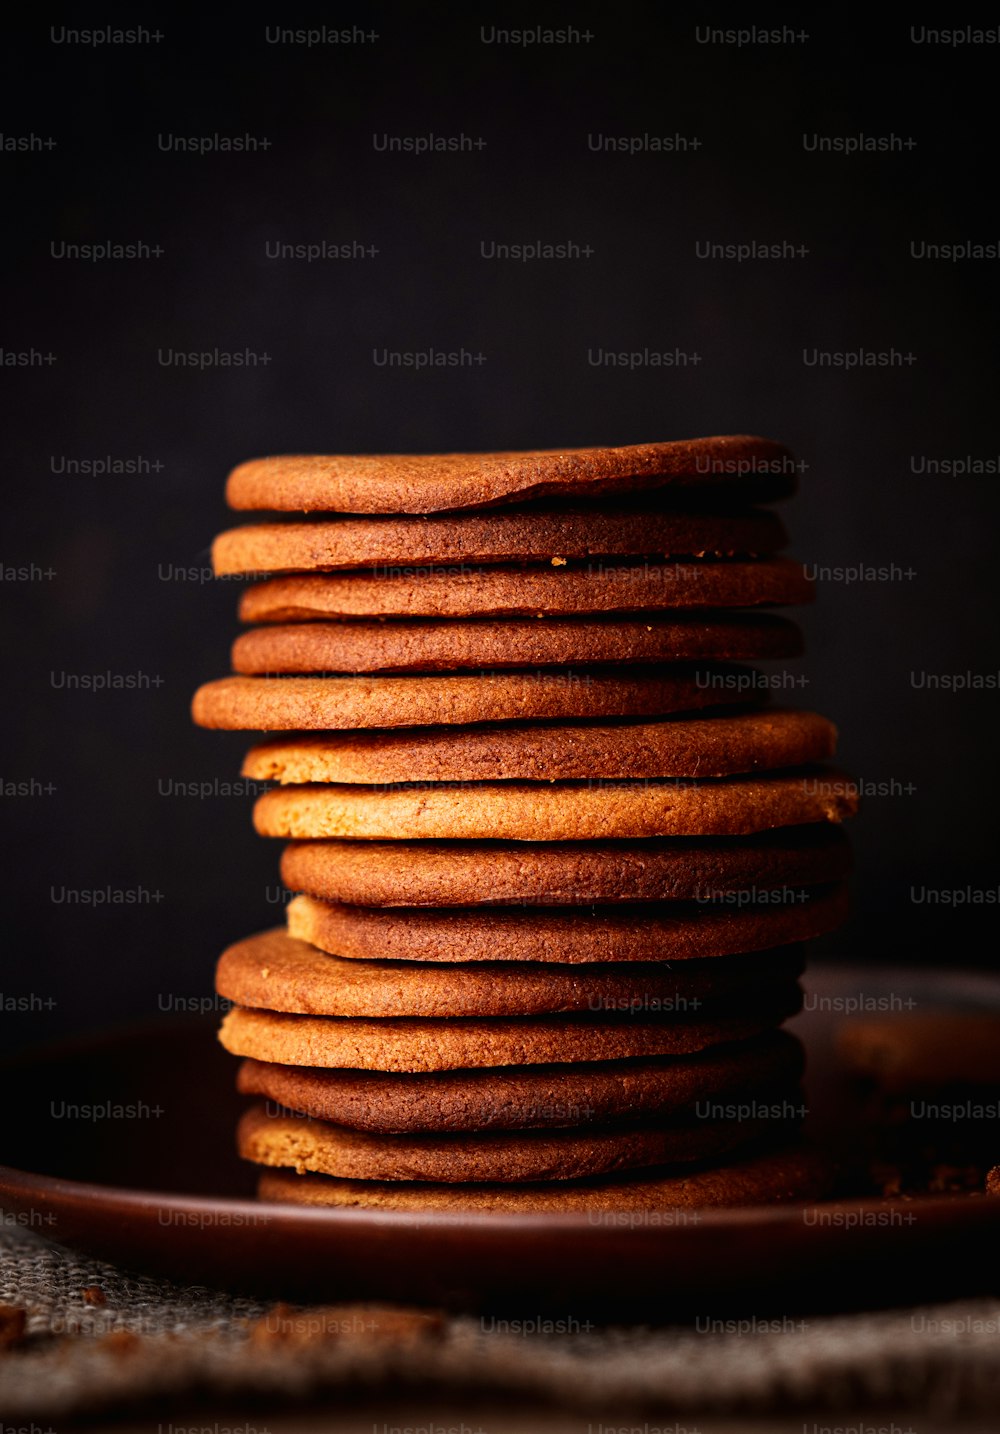 une pile de biscuits posée sur une assiette